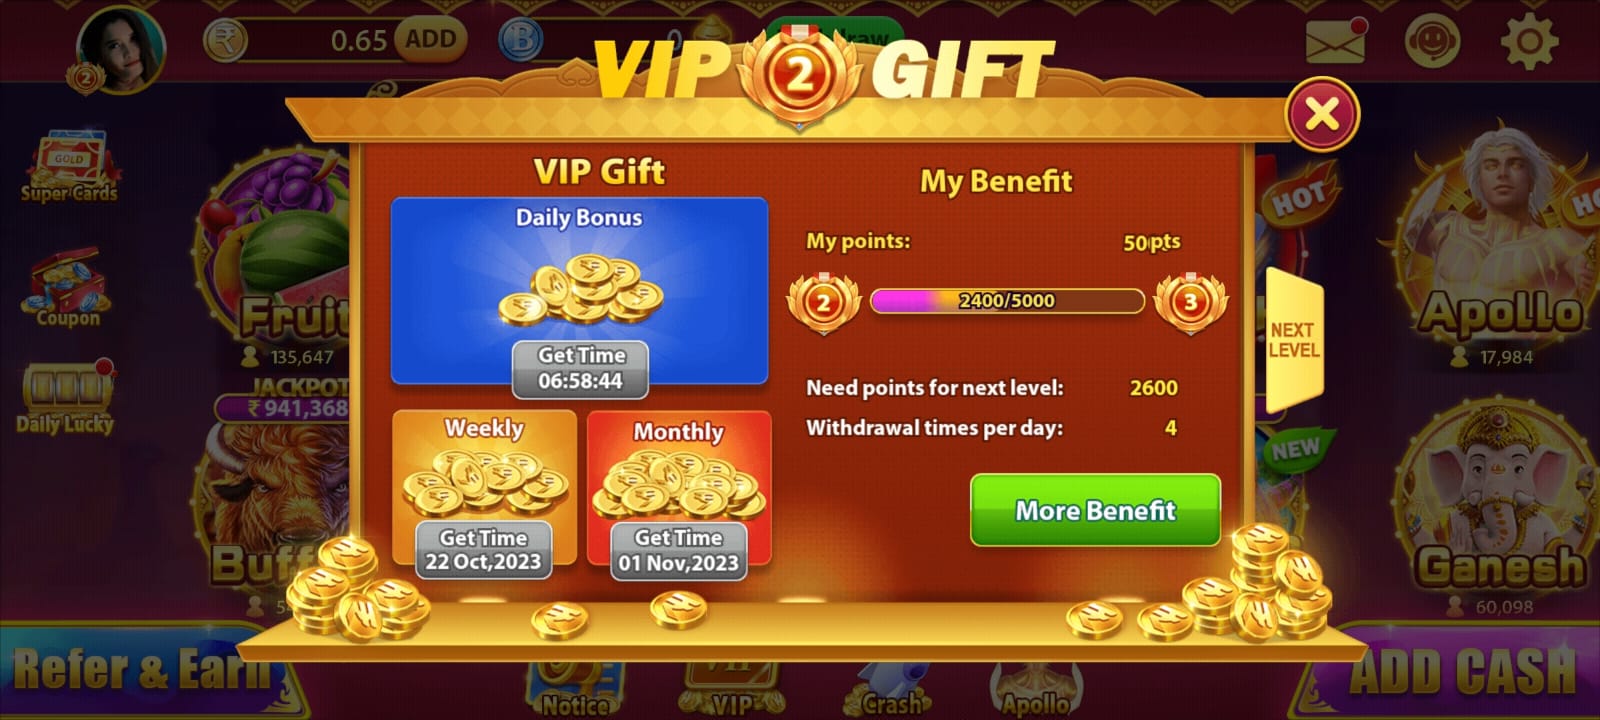 Slots Mega Casino VIP GIFT